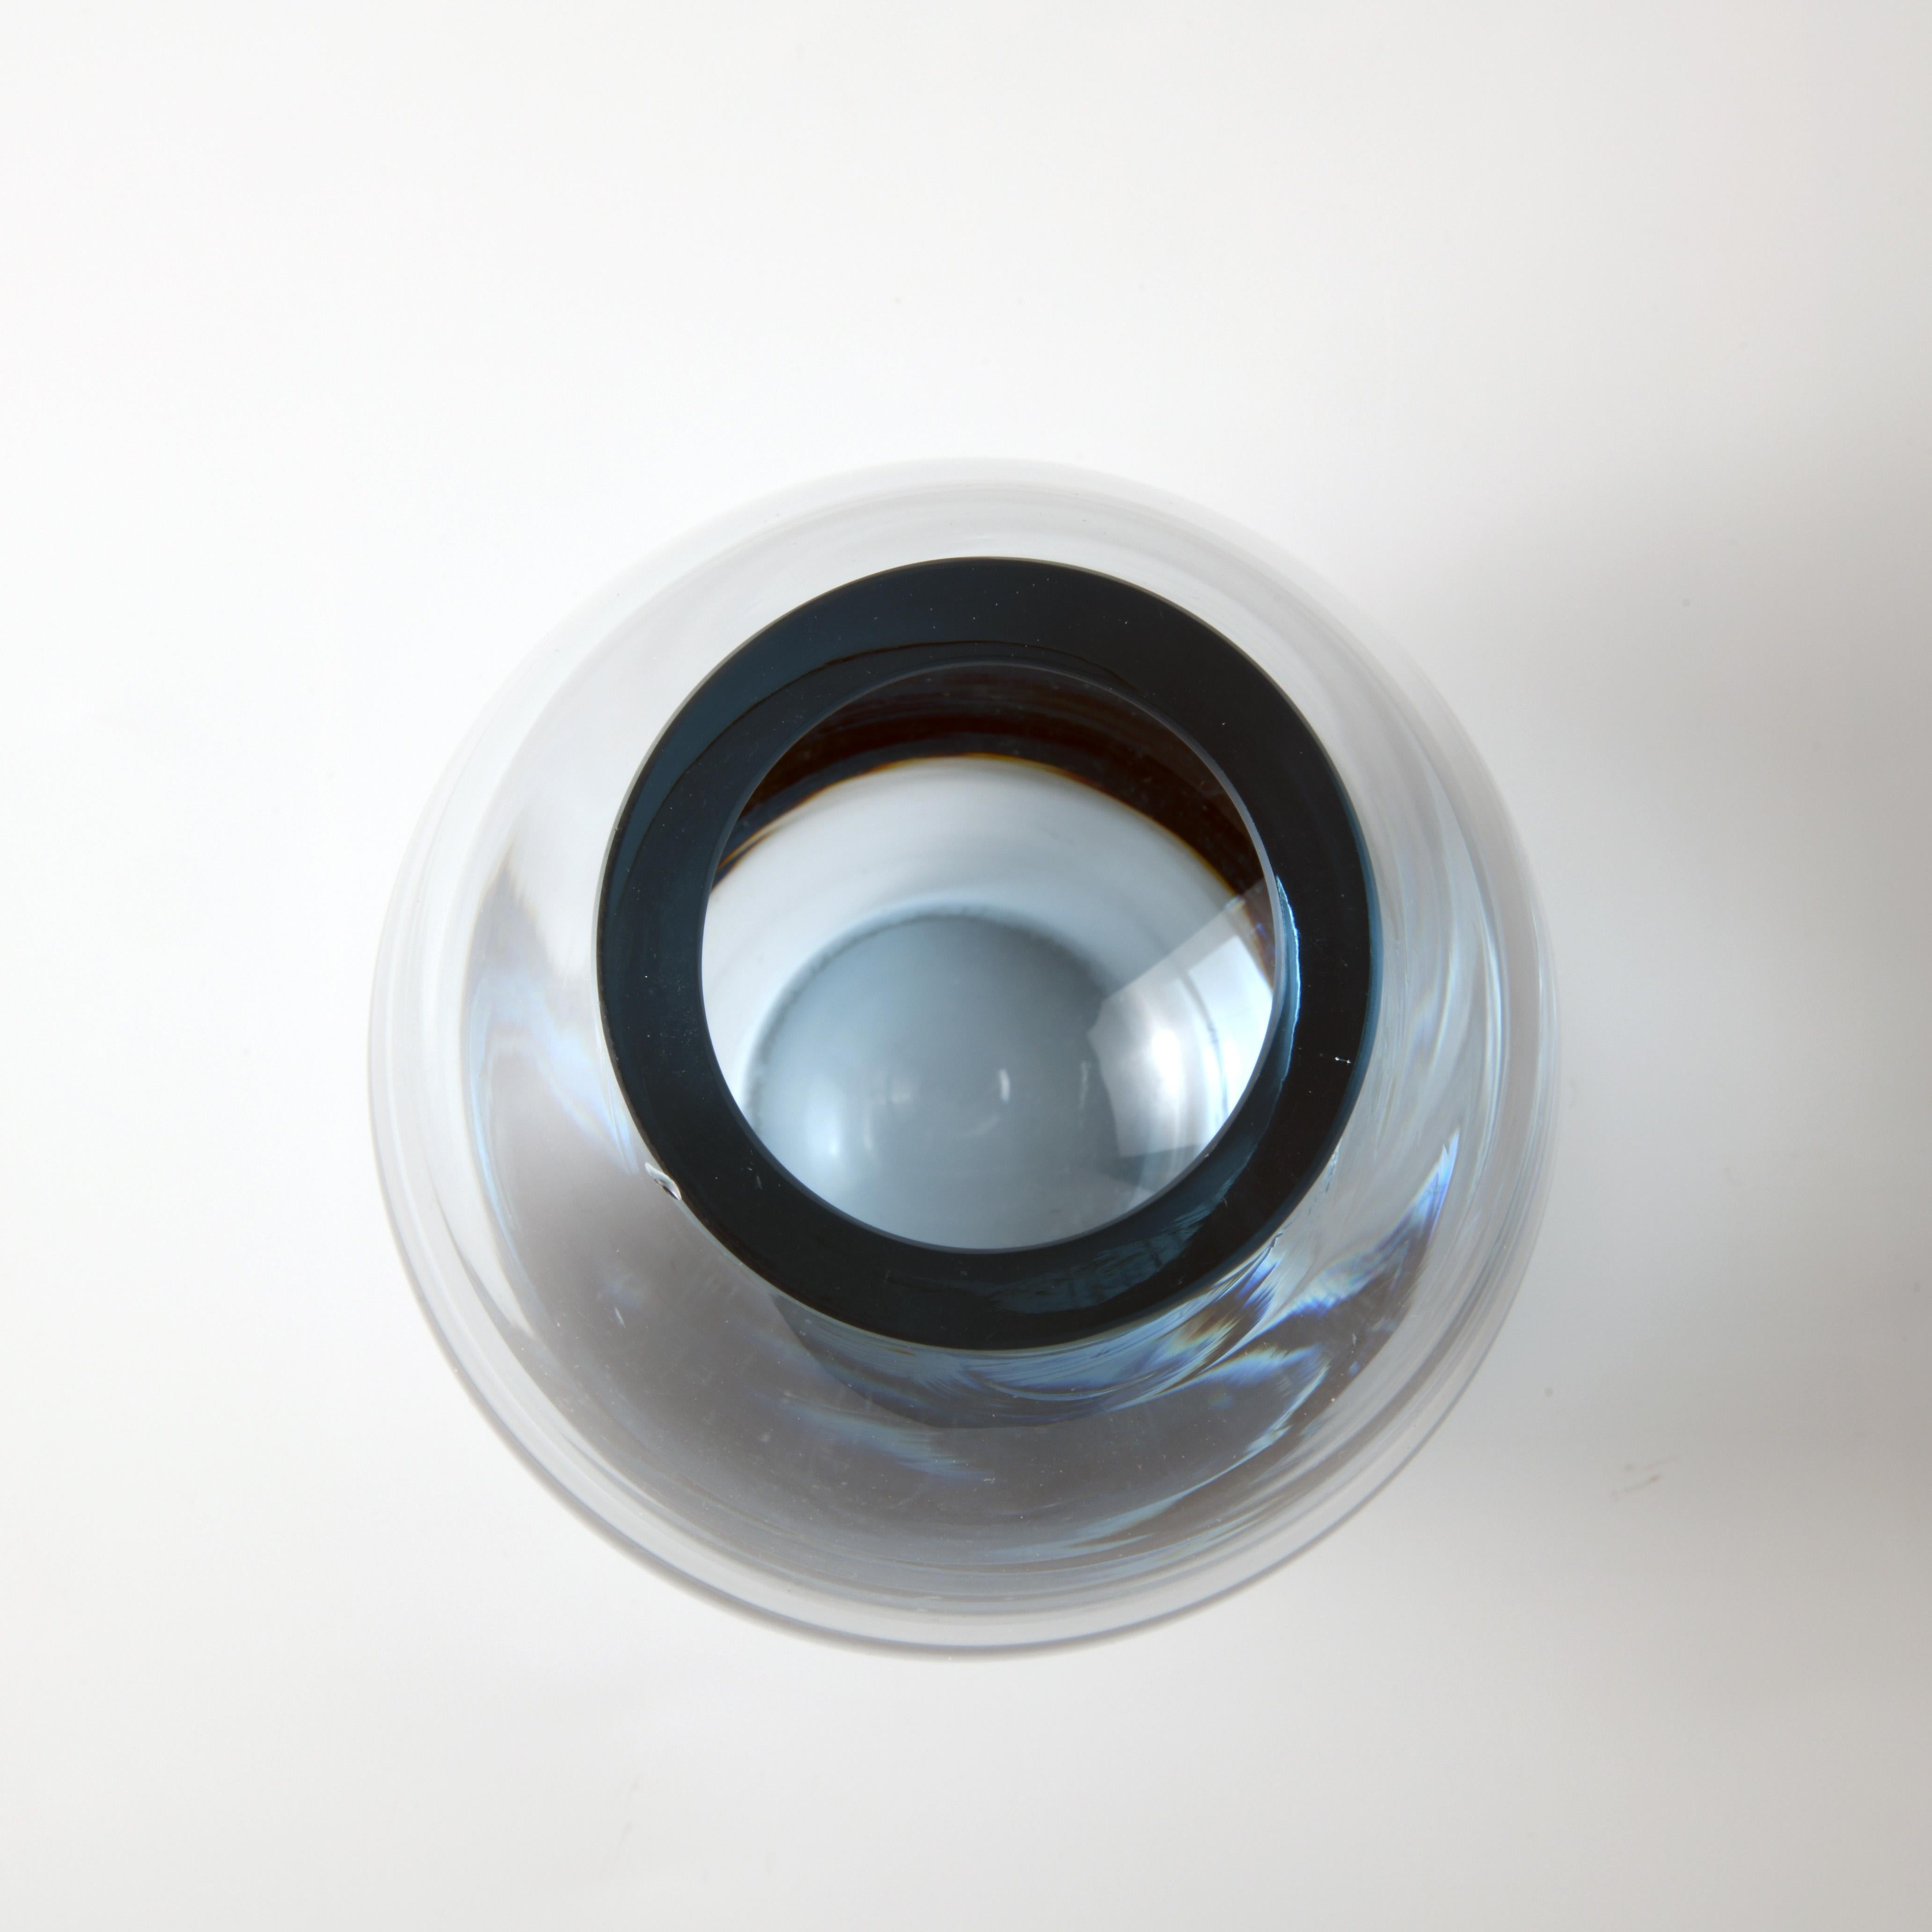 Glass Vintage Danish Vase Designed by Per Lutken Manufactured by Holmegaard in the 60s